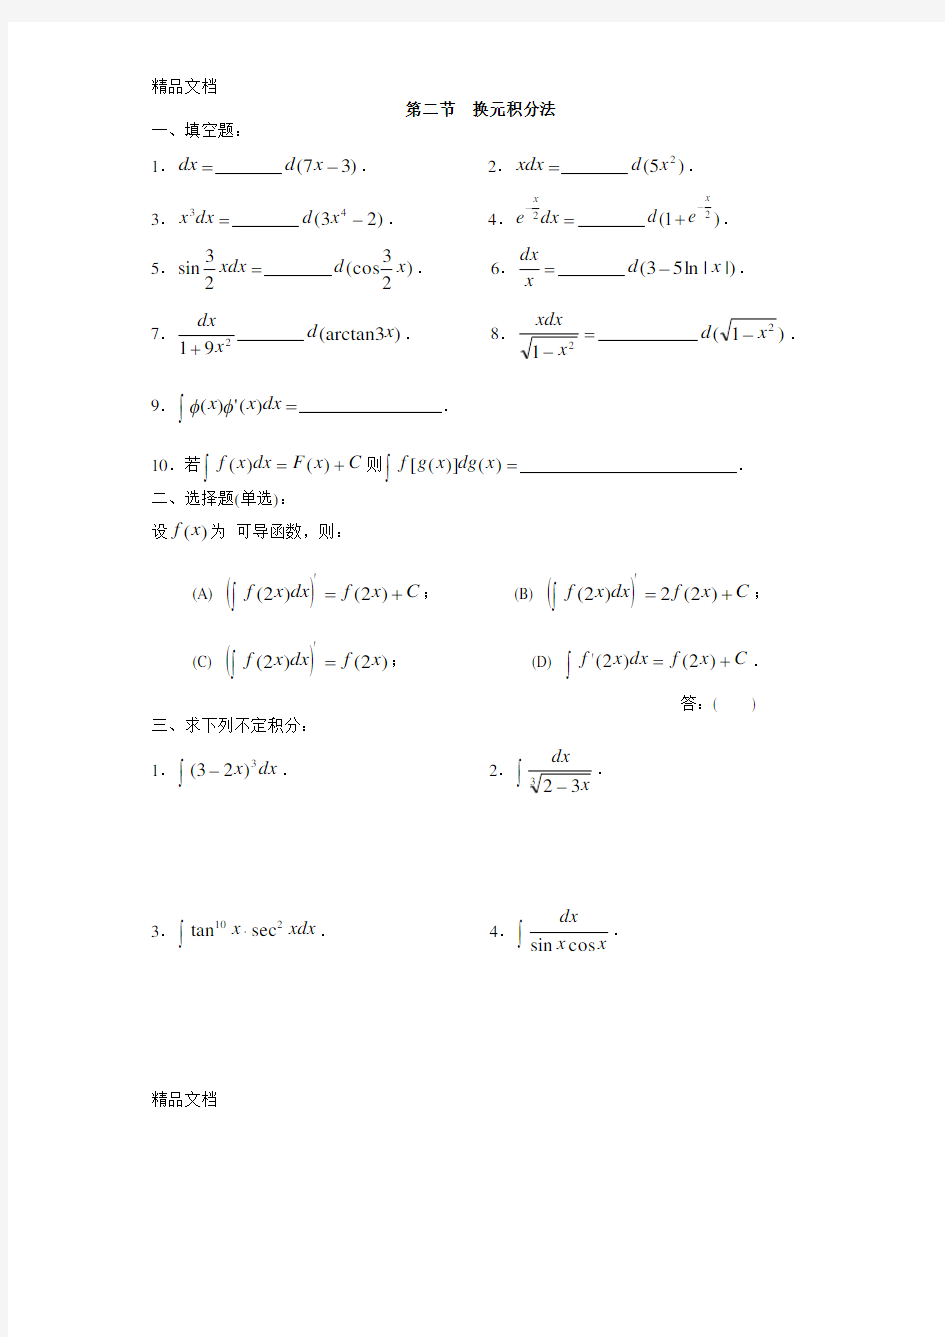 最新高等数学(同济五版)-第四章-不定积分-练习题册